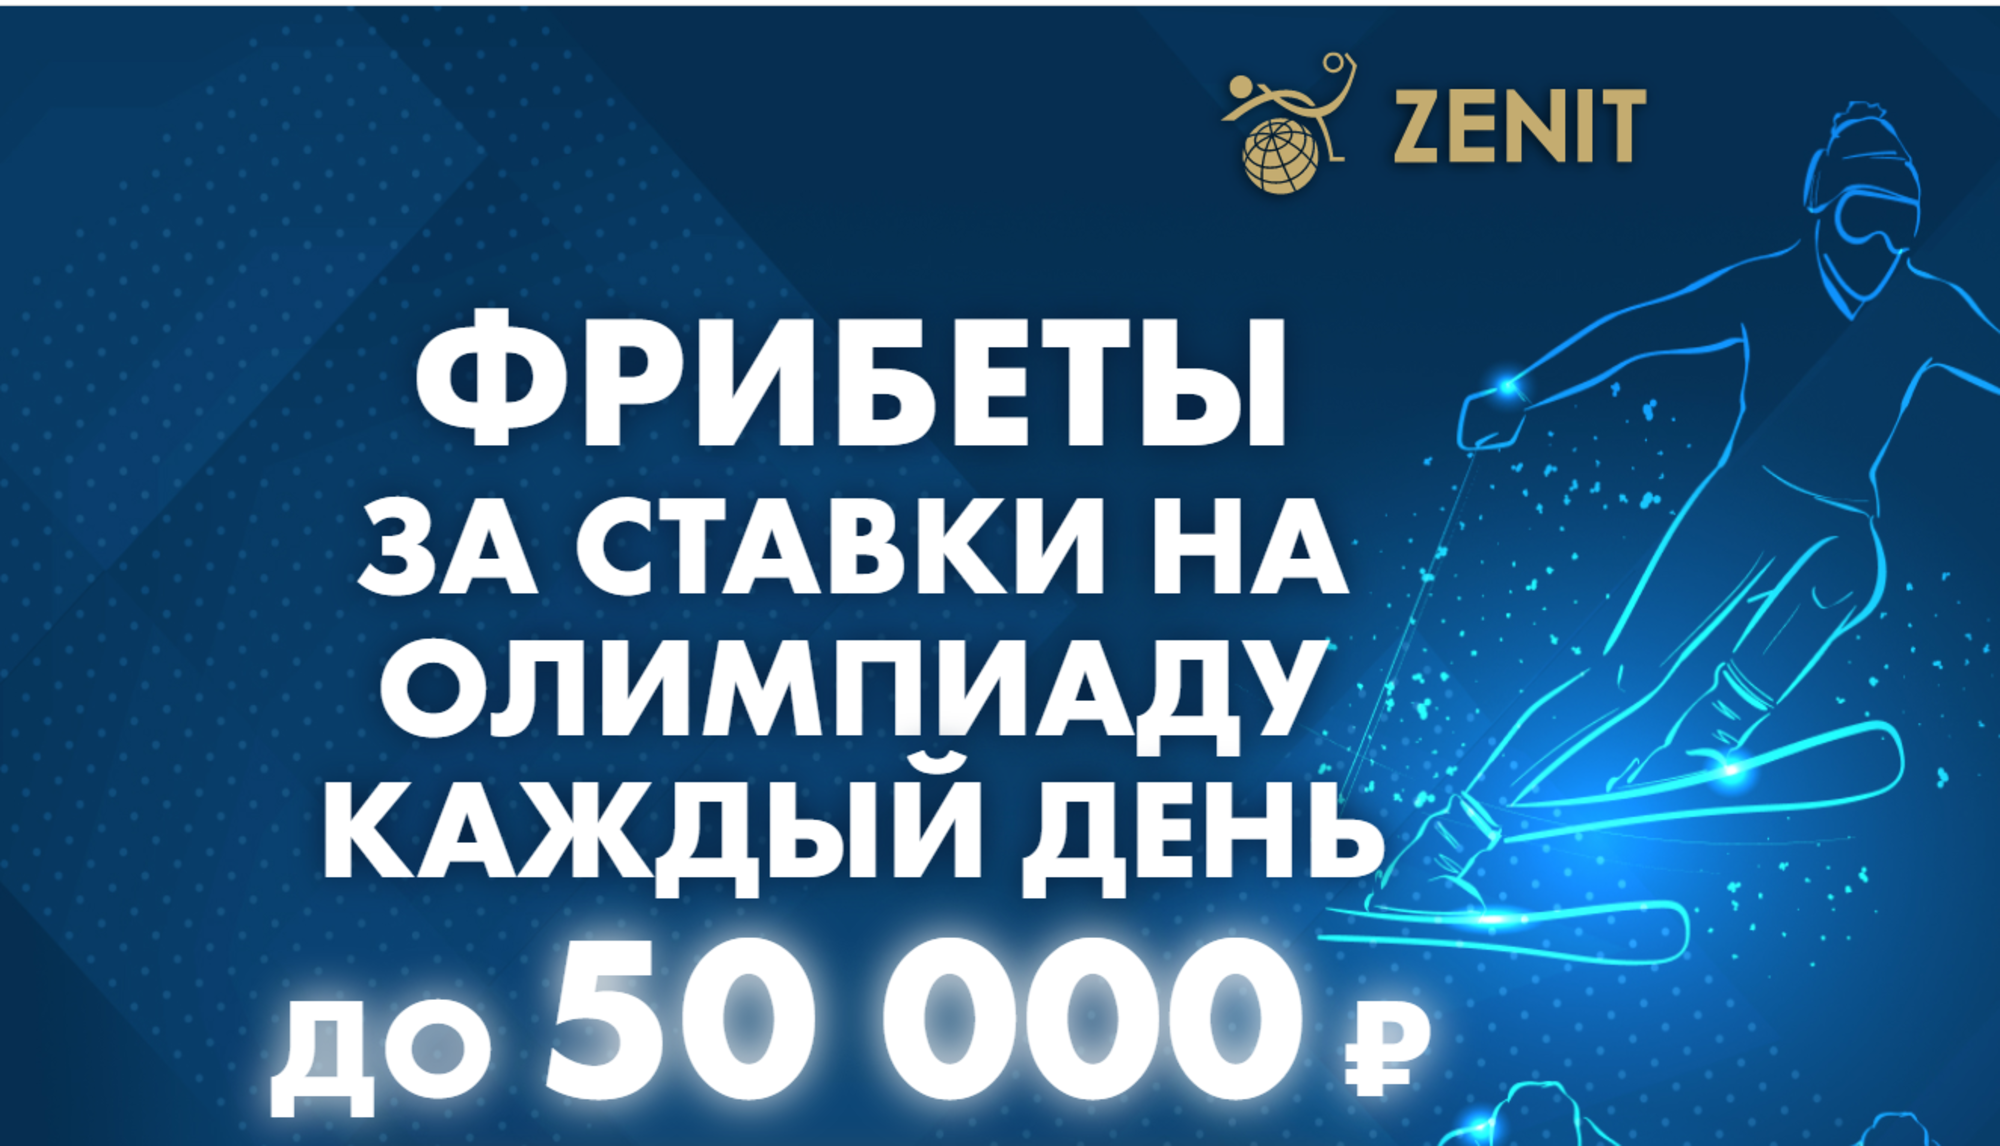 «Зенит» разыграет фрибеты до 50000 рублей за ставки на события зимних Олимпийских игр